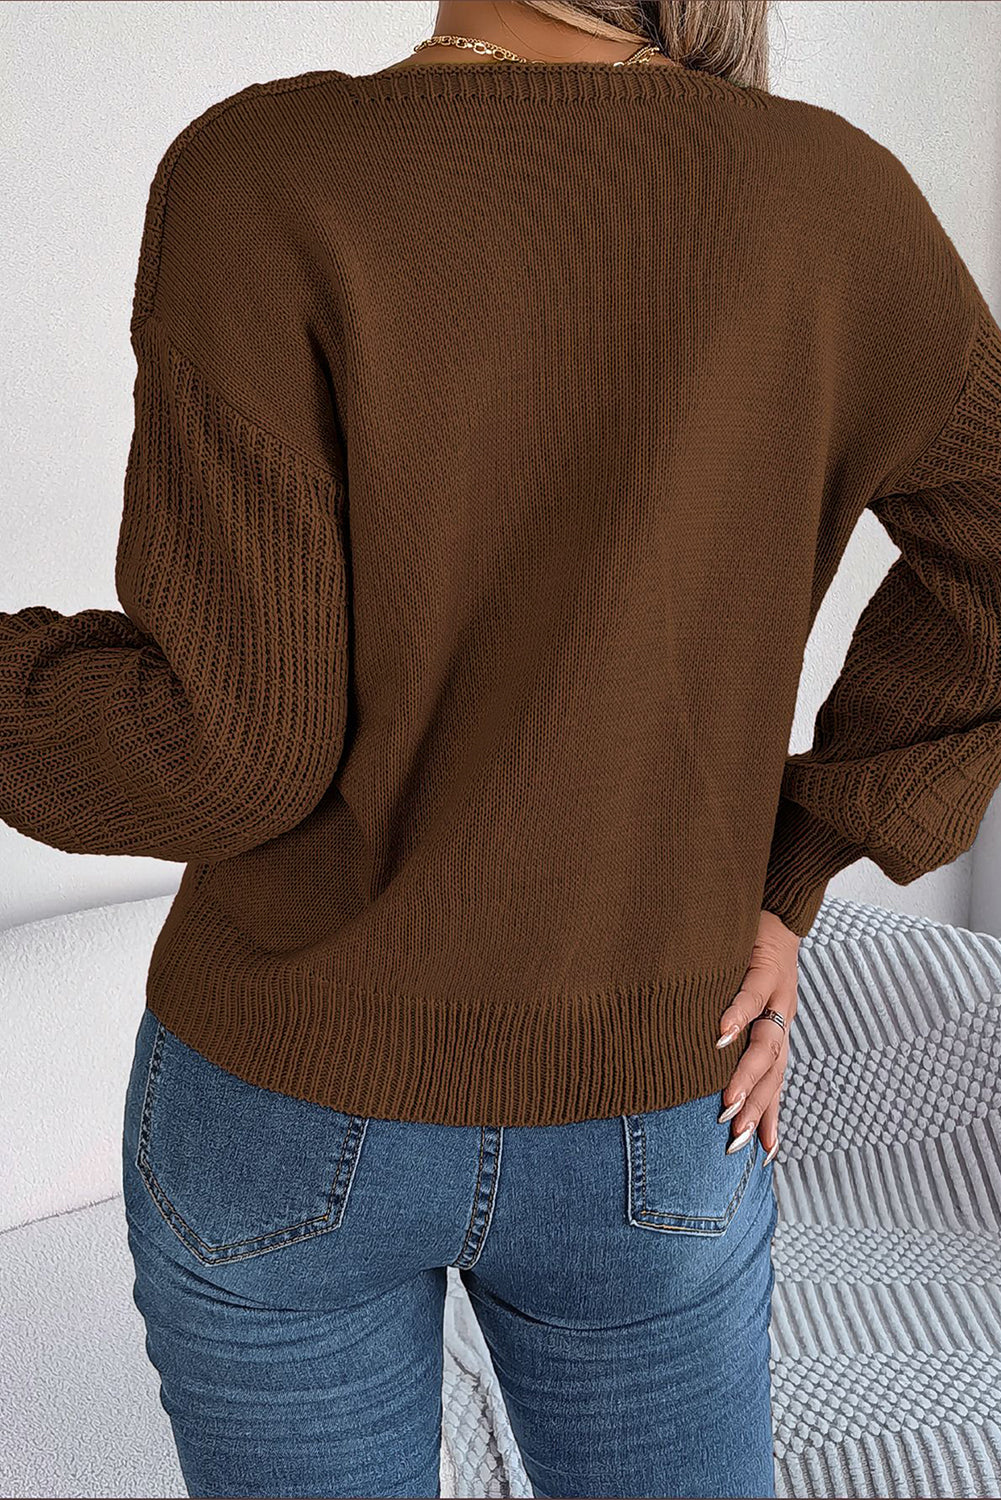 Pleten pulover s kvadratnim izrezom in mešano teksturo